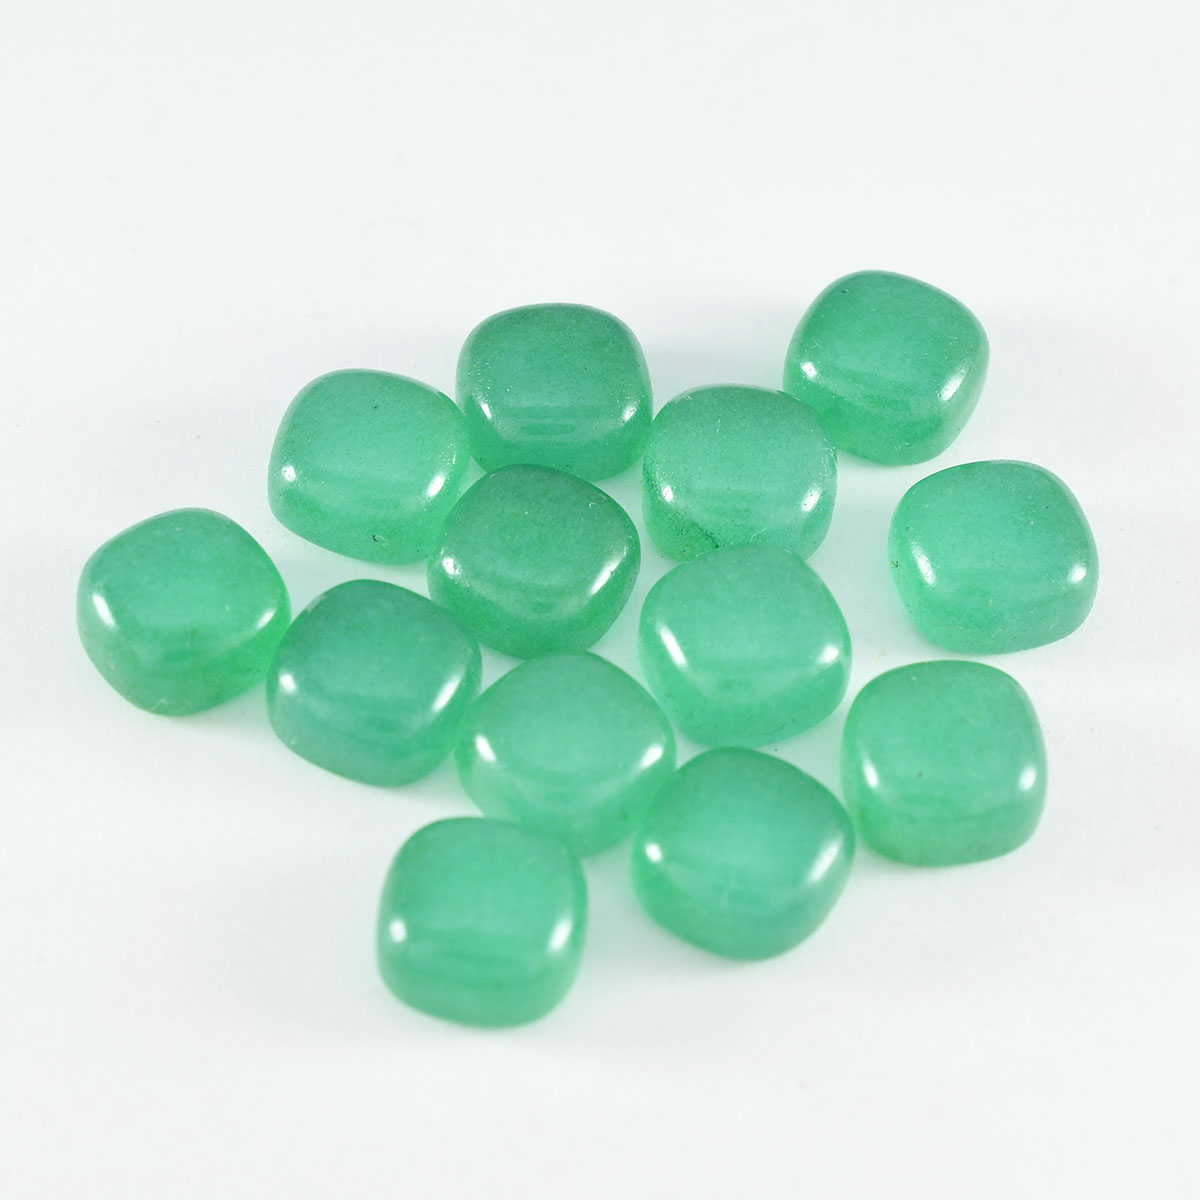 Riyogems 1 pieza cabujón de ónix verde 6x6 mm forma de cojín piedra suelta de calidad AA